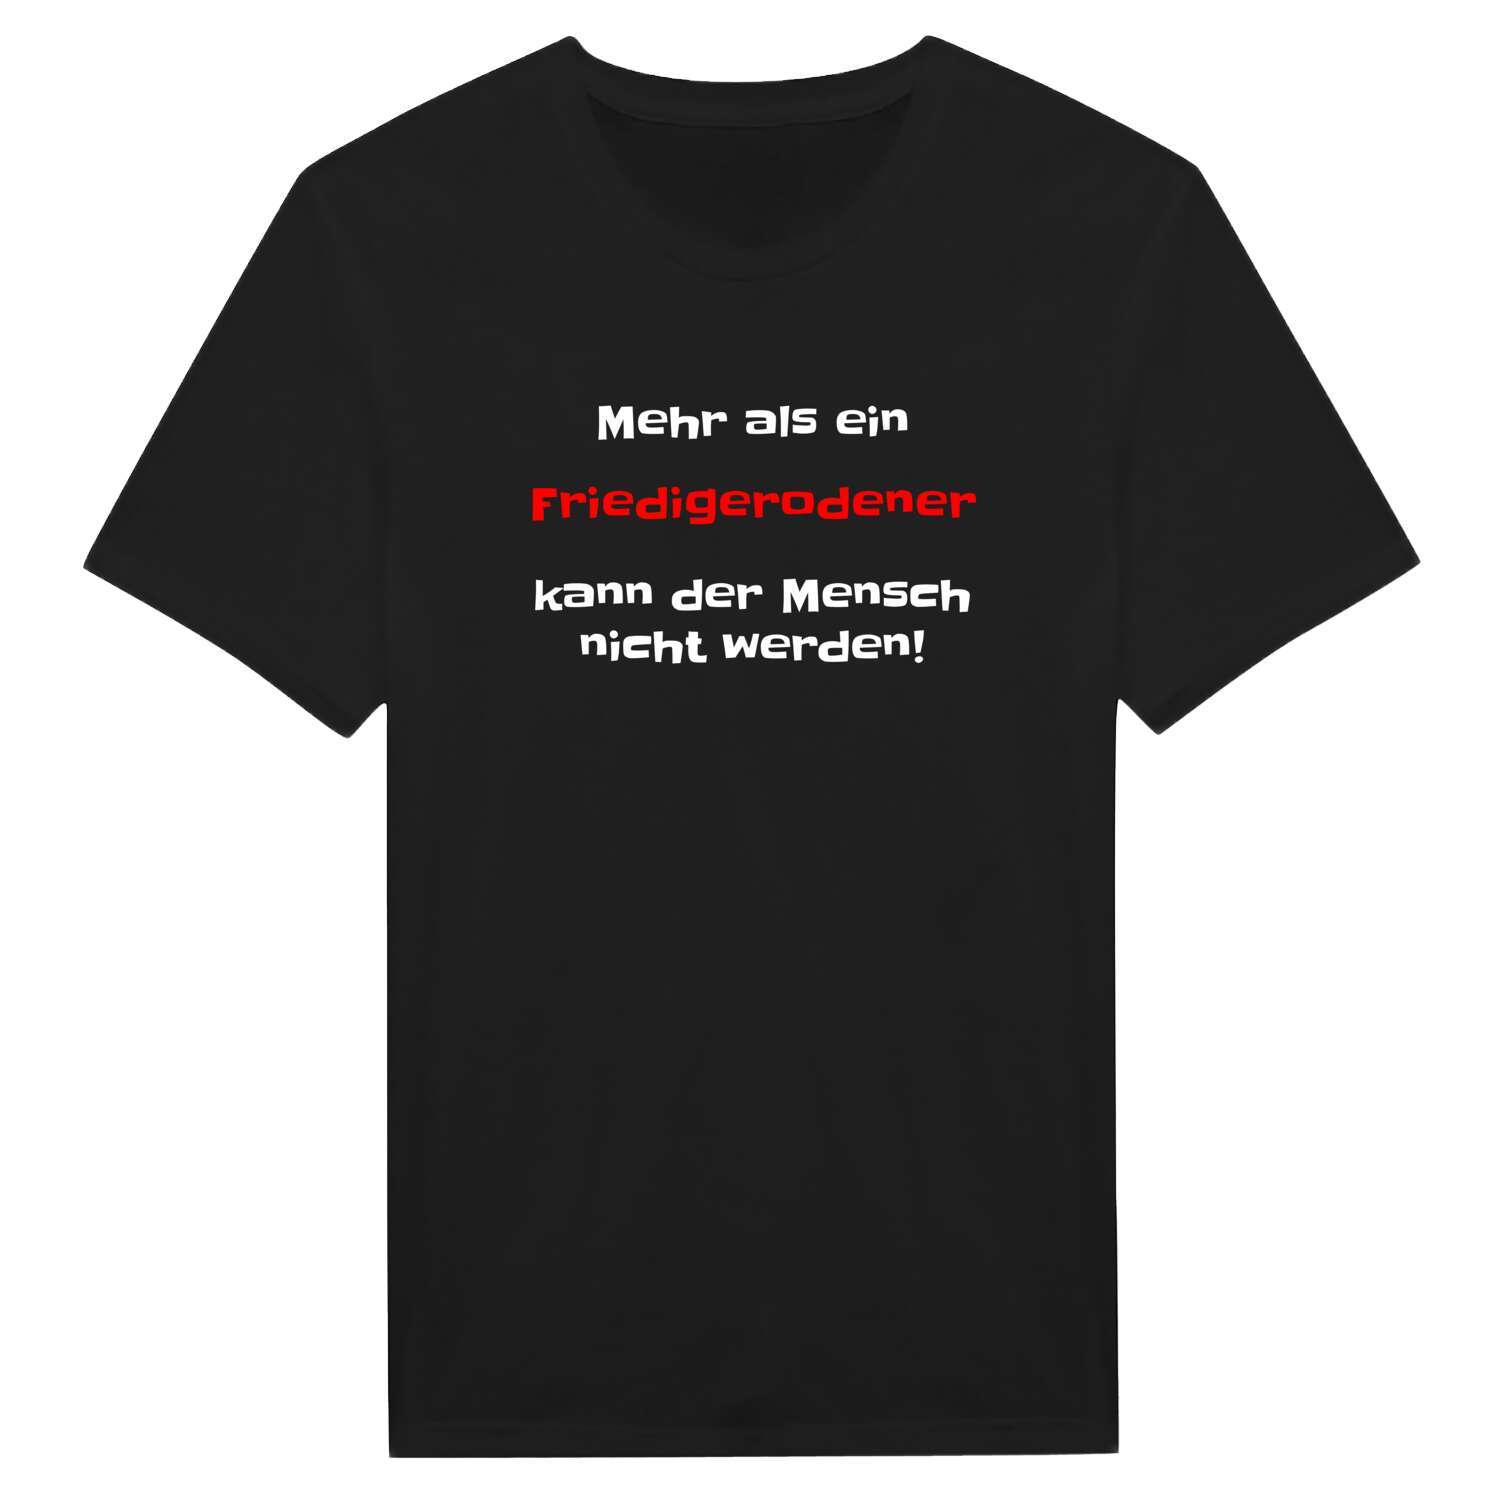 Friedigerode T-Shirt »Mehr als ein«